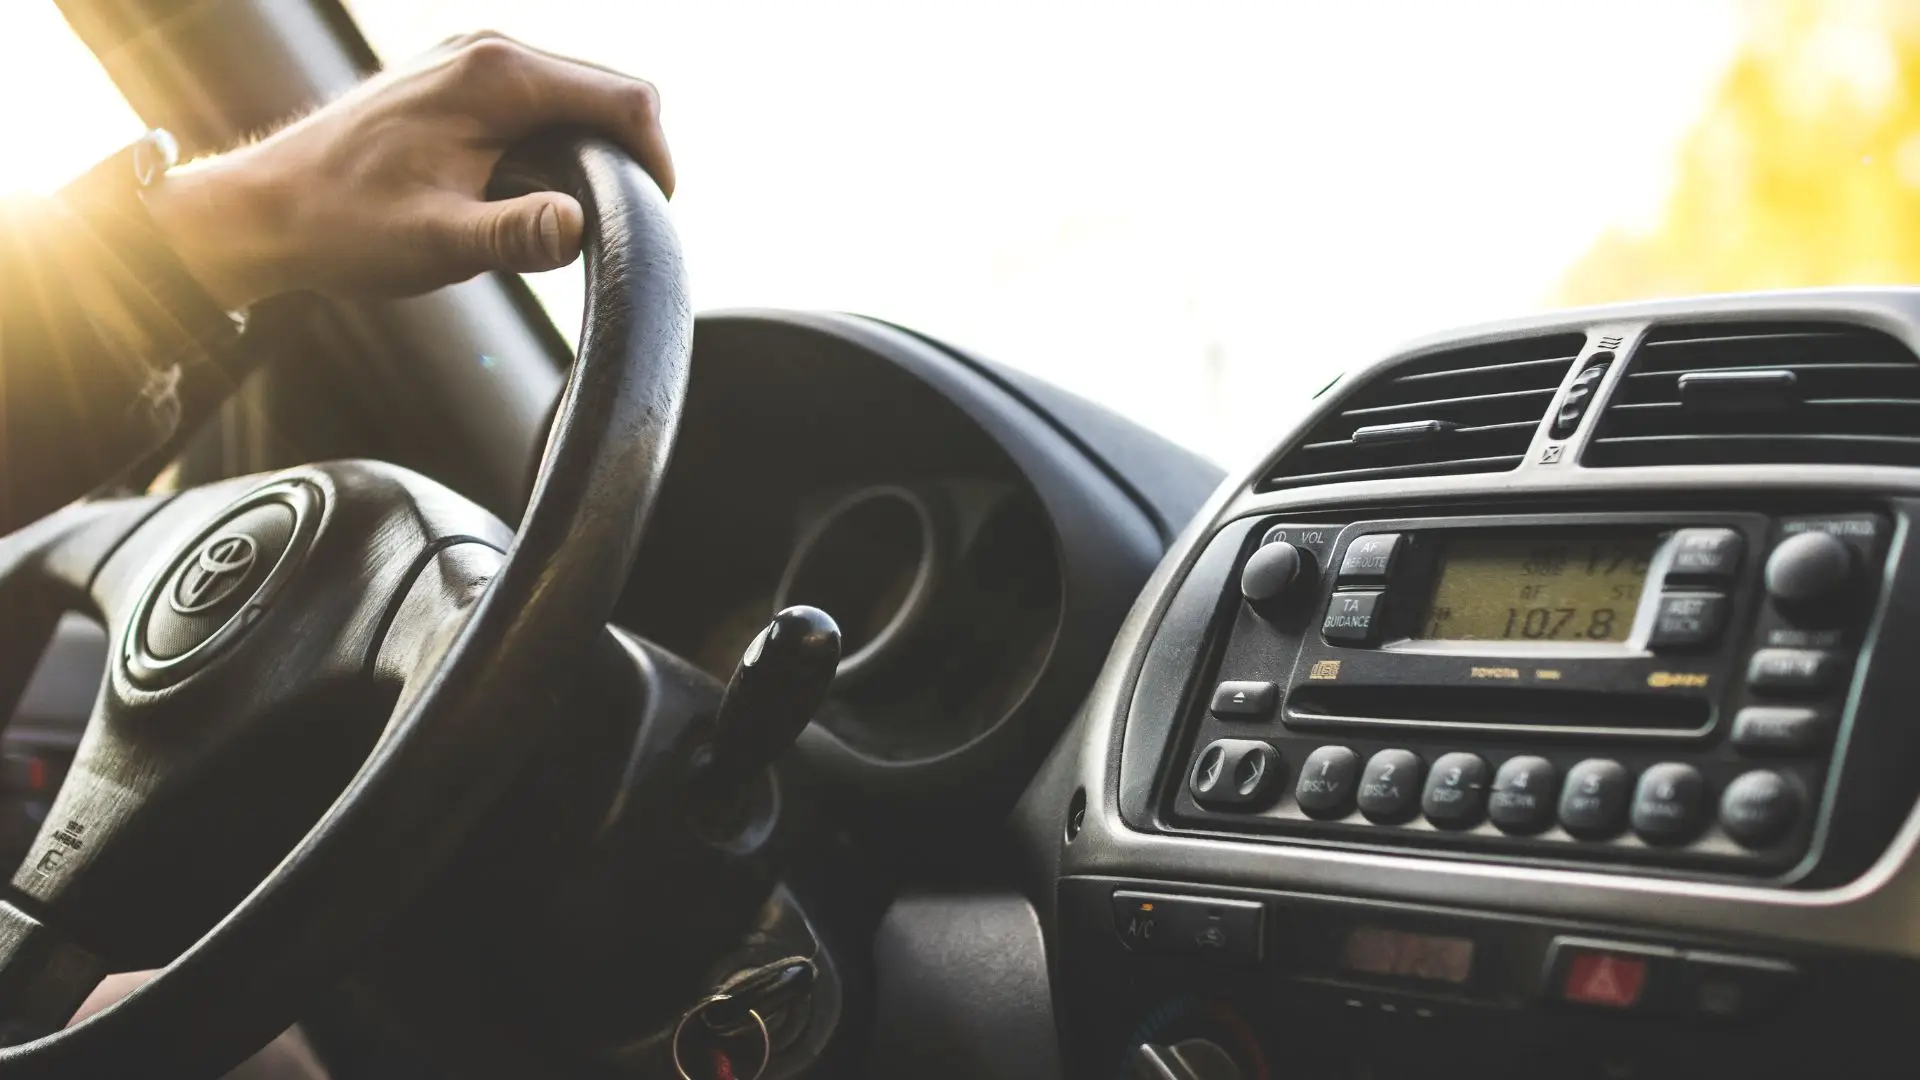 IMT iniciou envio de alertas para condutores com cartas de condução a caducar